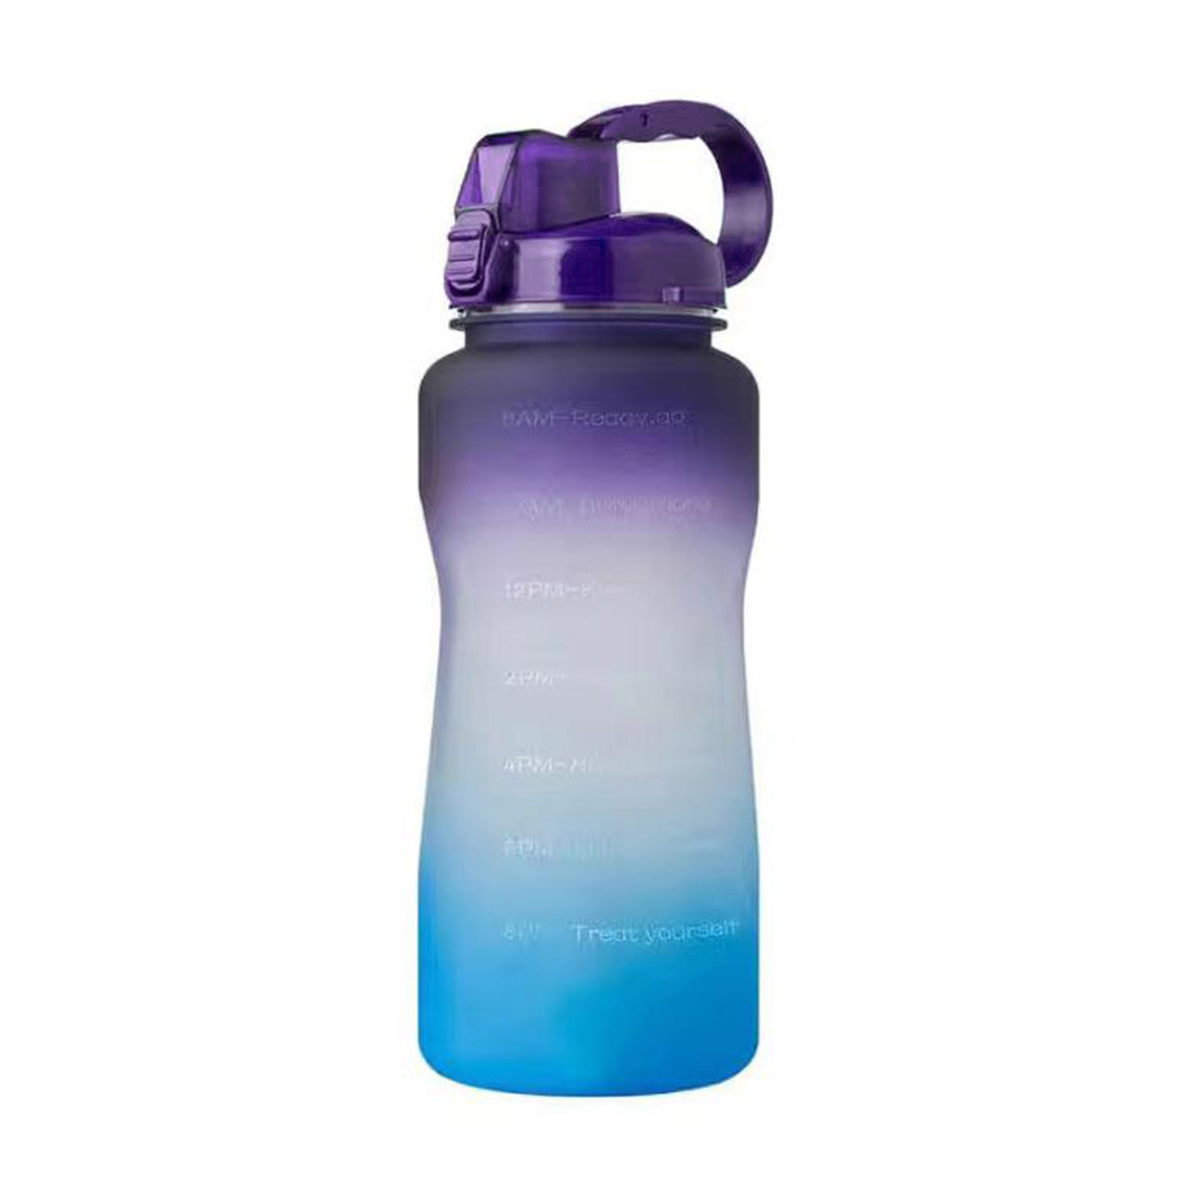  THE GYM KEG Botella de agua de 1 galón (128 onzas)  Botella de  gimnasio con tapa con popote, correa de transporte, marcas de tiempo  motivacionales, botellas de agua deportivas con